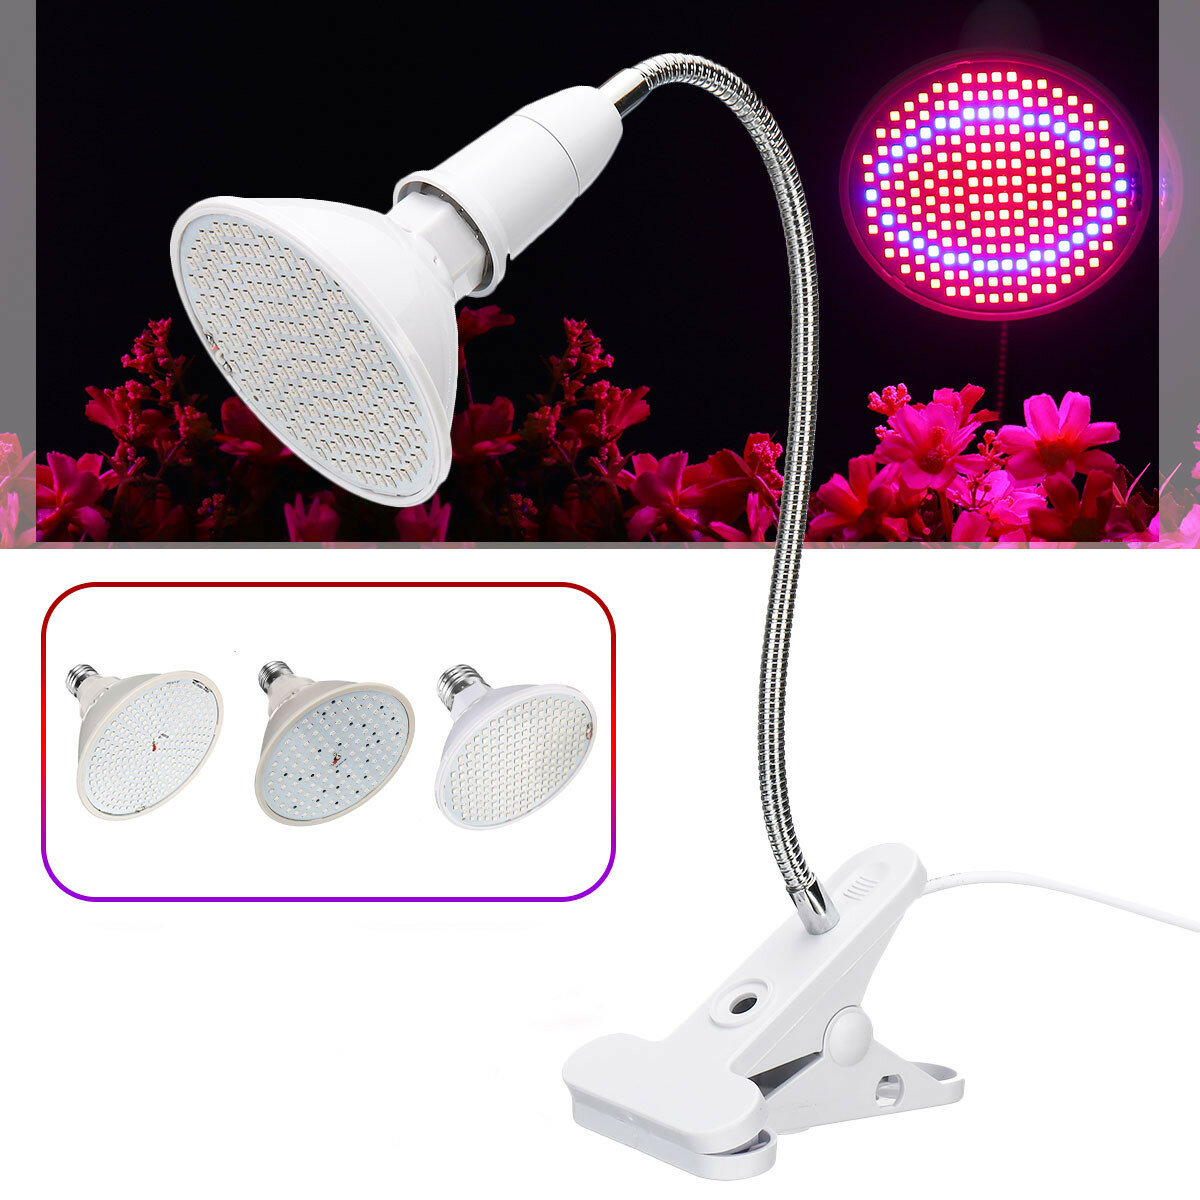 

AC85-265V 15W 20W 26W E27 LED Bulb Plant Grow Light Desktop Growth Lamp for Flower EU Plug